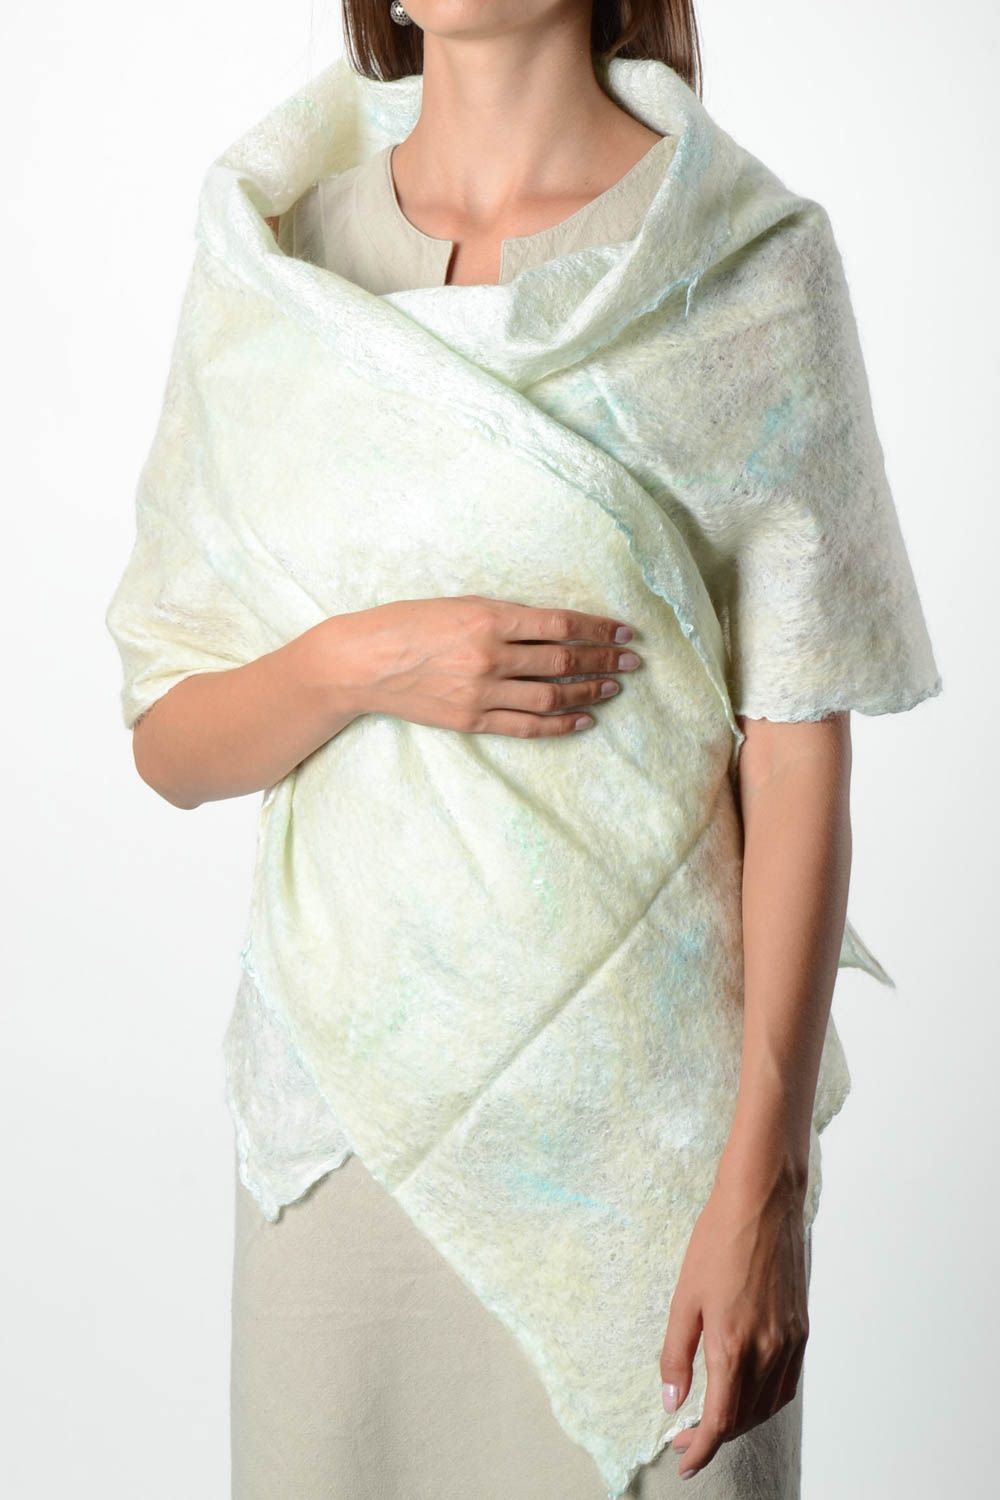 Woolen female accessory handmade stylish shawl unusual shawl present cute shawl photo 1